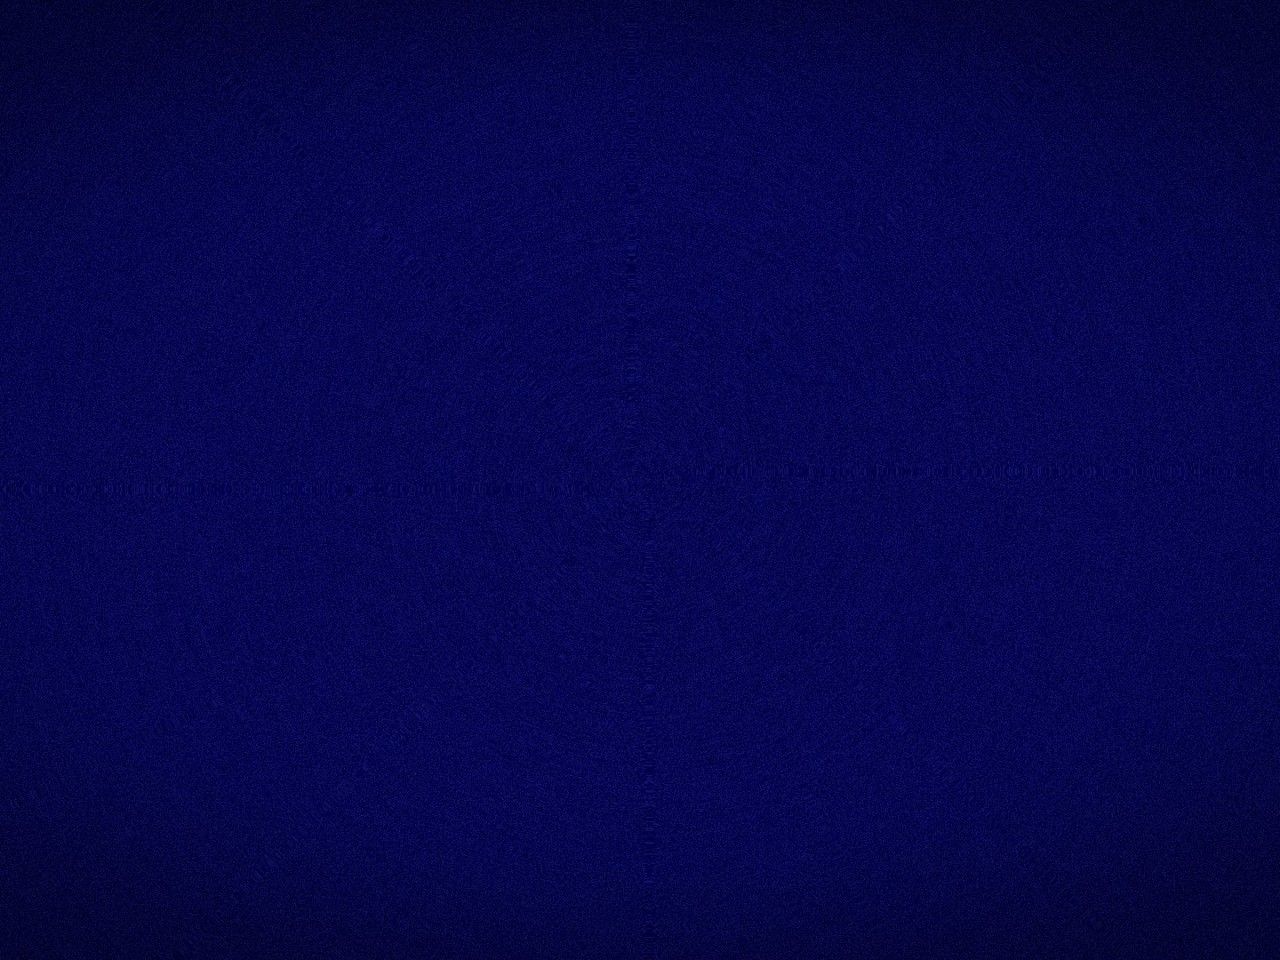 Surface Solid Blue Dark Wallpaper Fullscreen